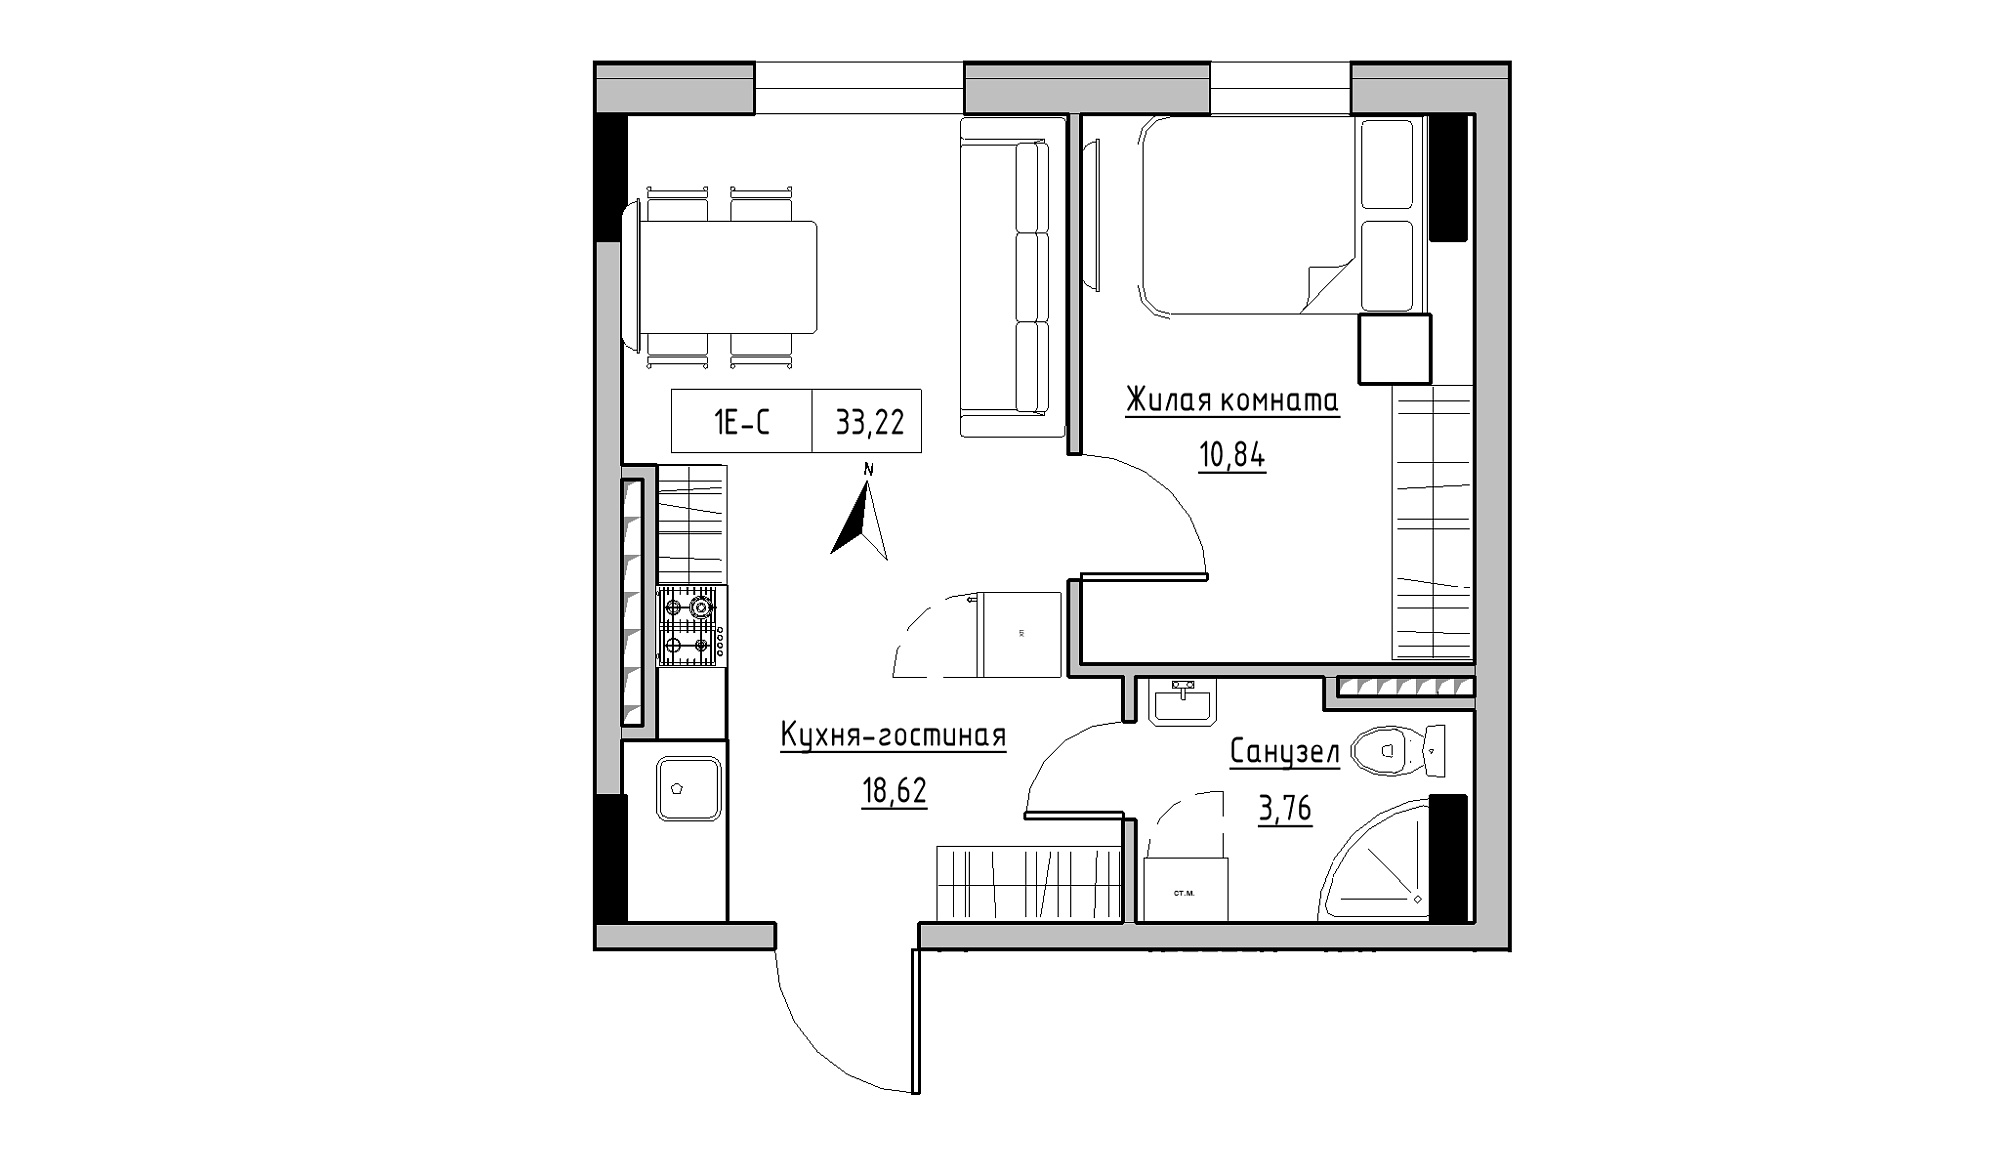 Планування 1-к квартира площею 33.22м2, KS-025-05/0011.